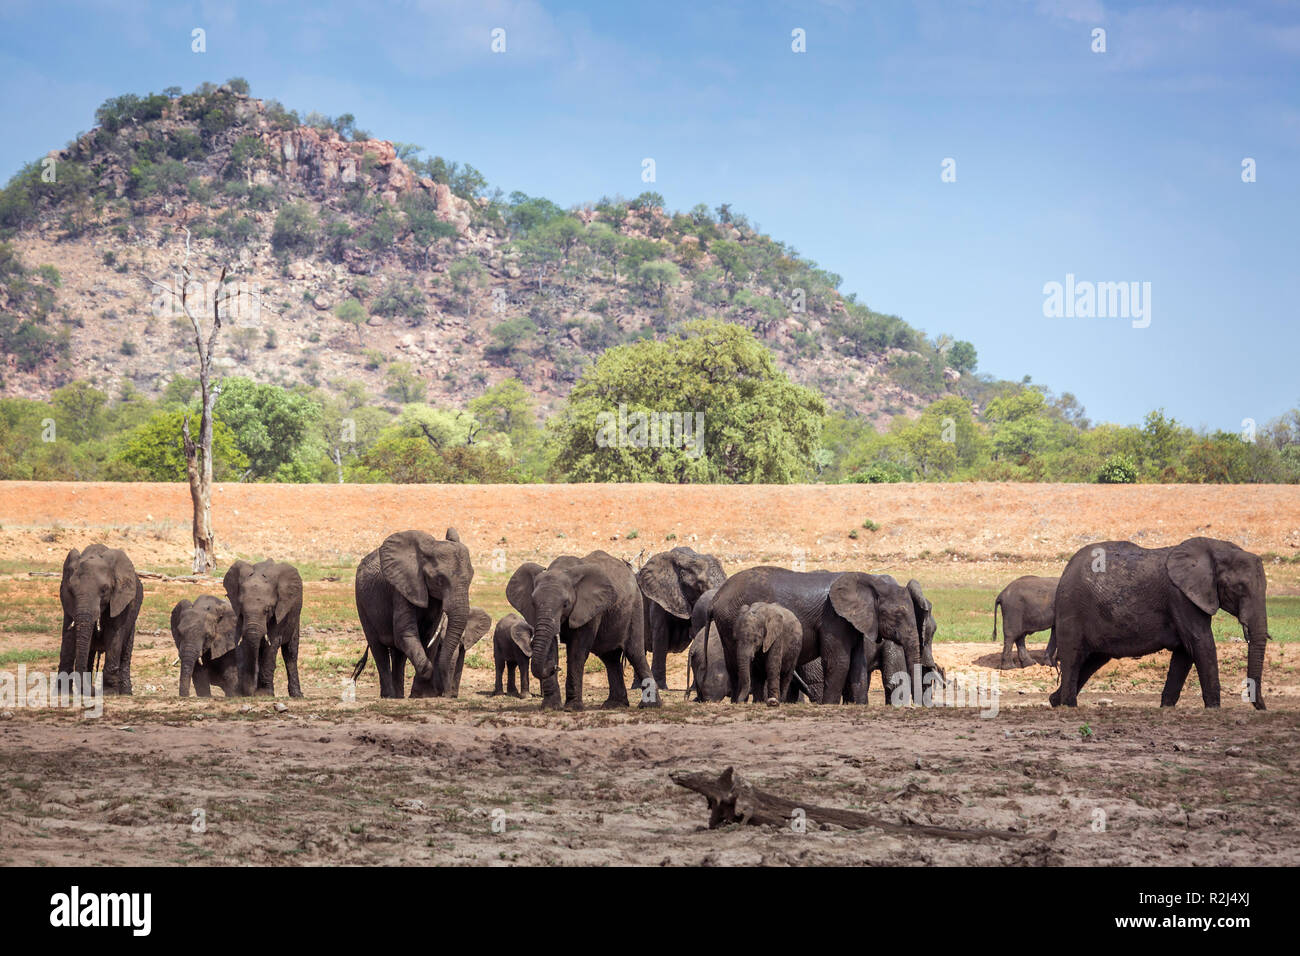 Bush africain elephant troupeau dans un paysage du parc national Kruger, Afrique du Sud ; espèce de la famille des Elephantidae Loxodonta africana Banque D'Images